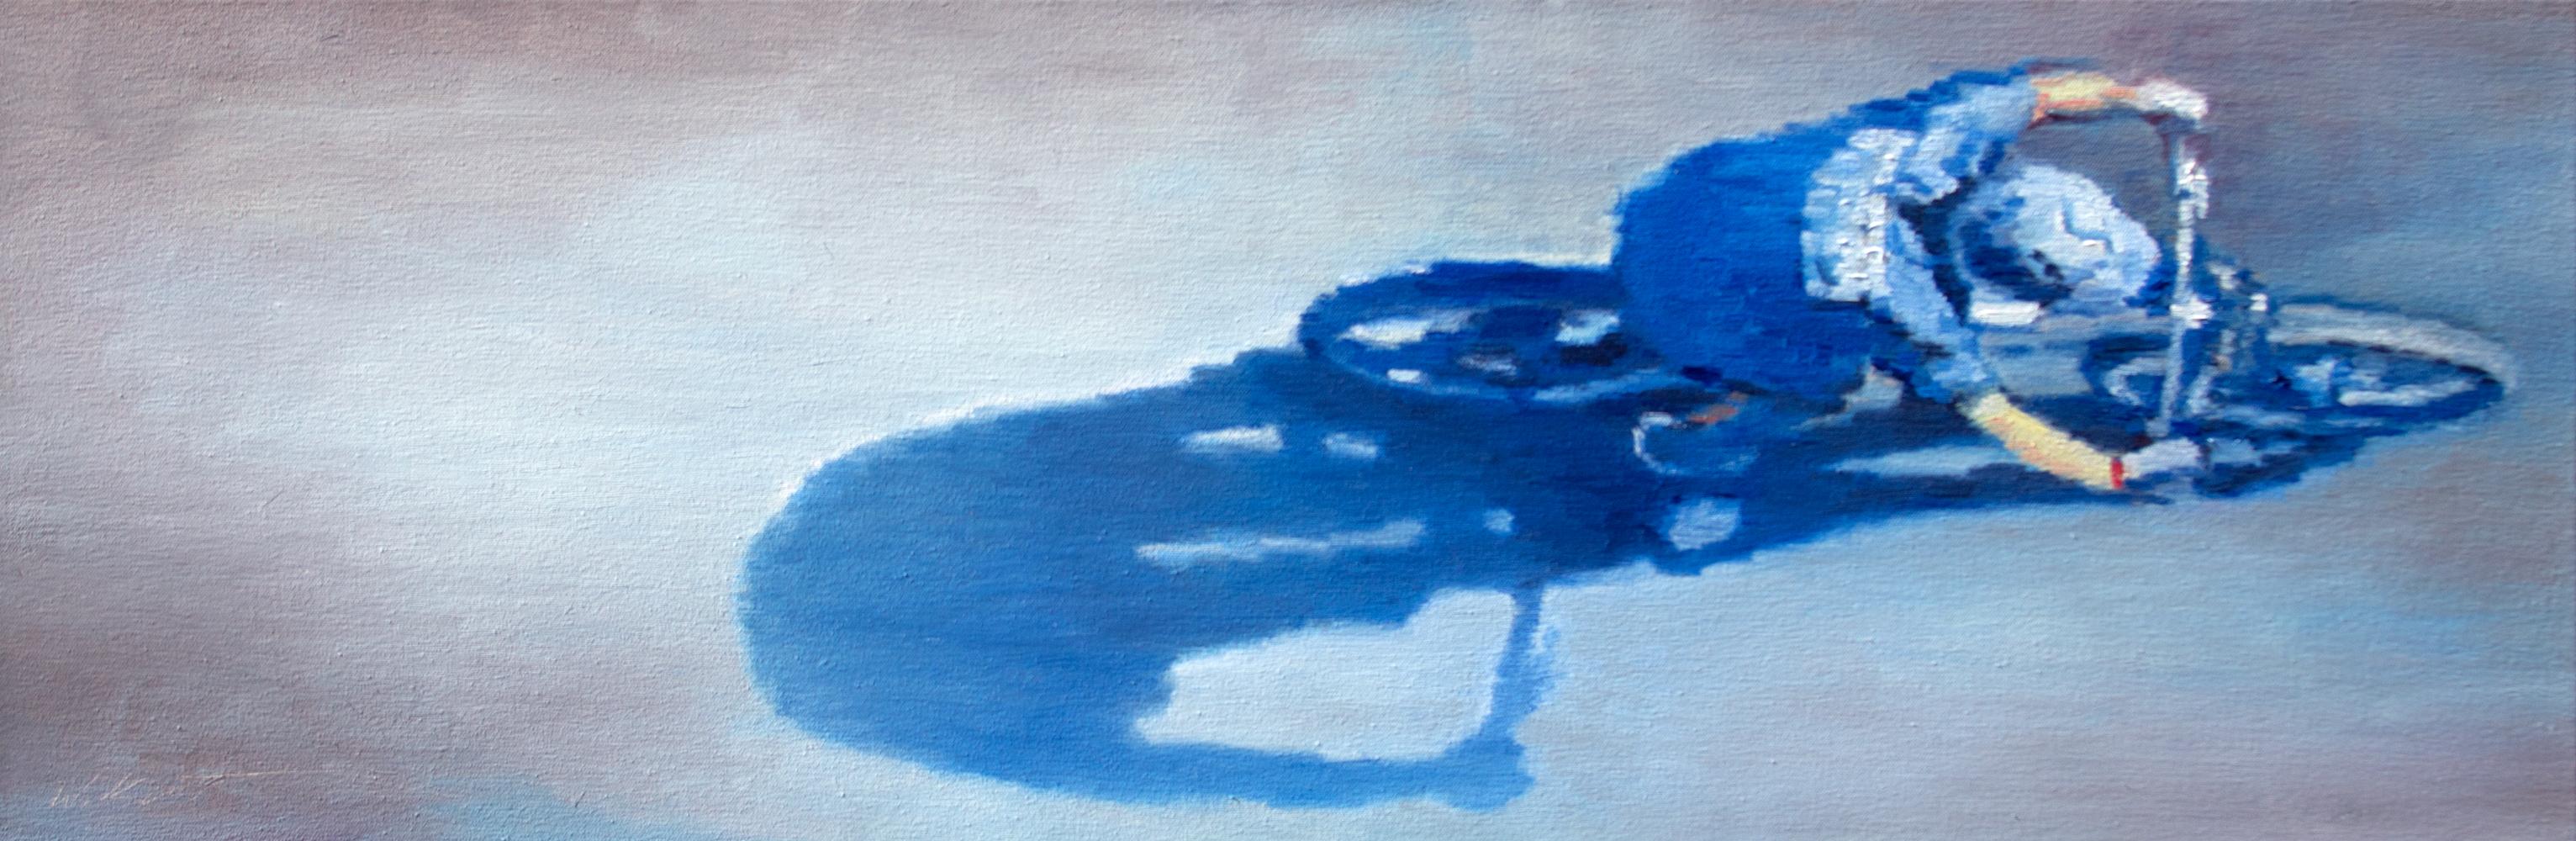 Figurative Painting Warren Keating - Peinture à l'huile - Bicyclette en bleu